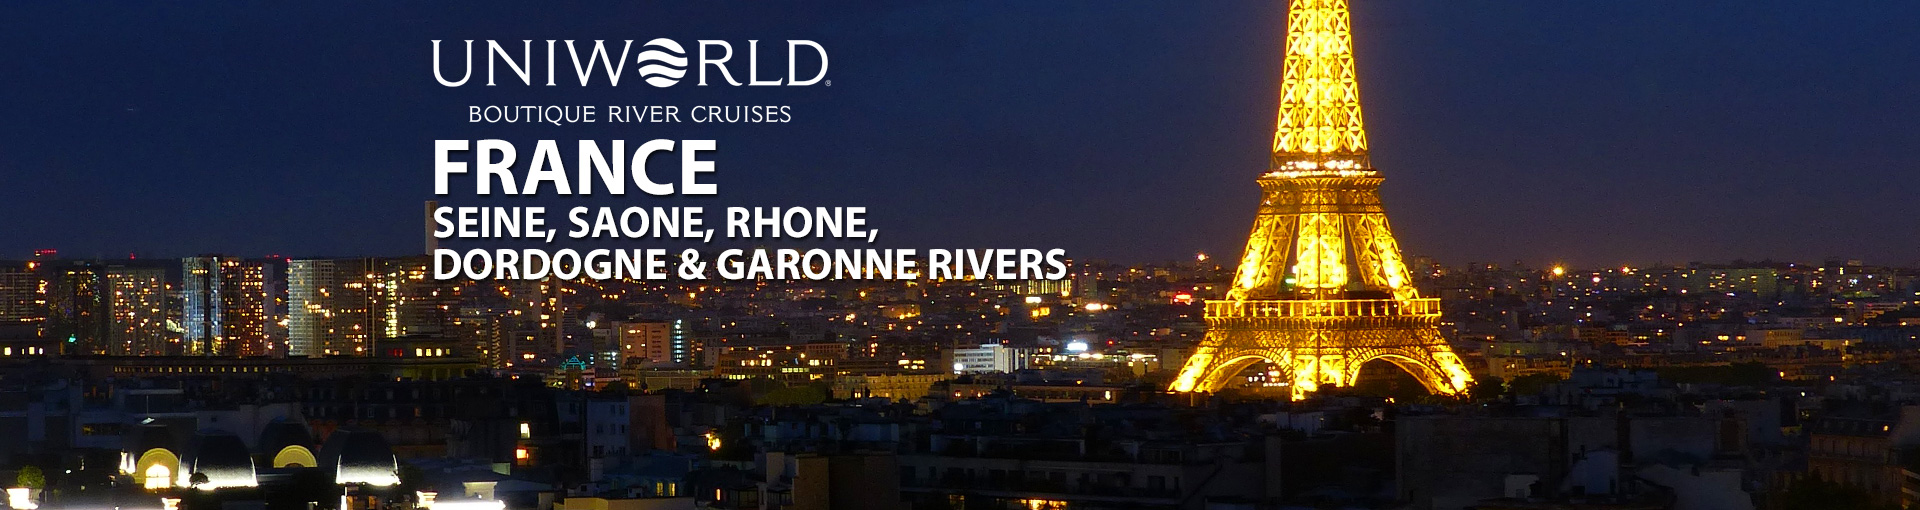 Uniworld River Cruises to France